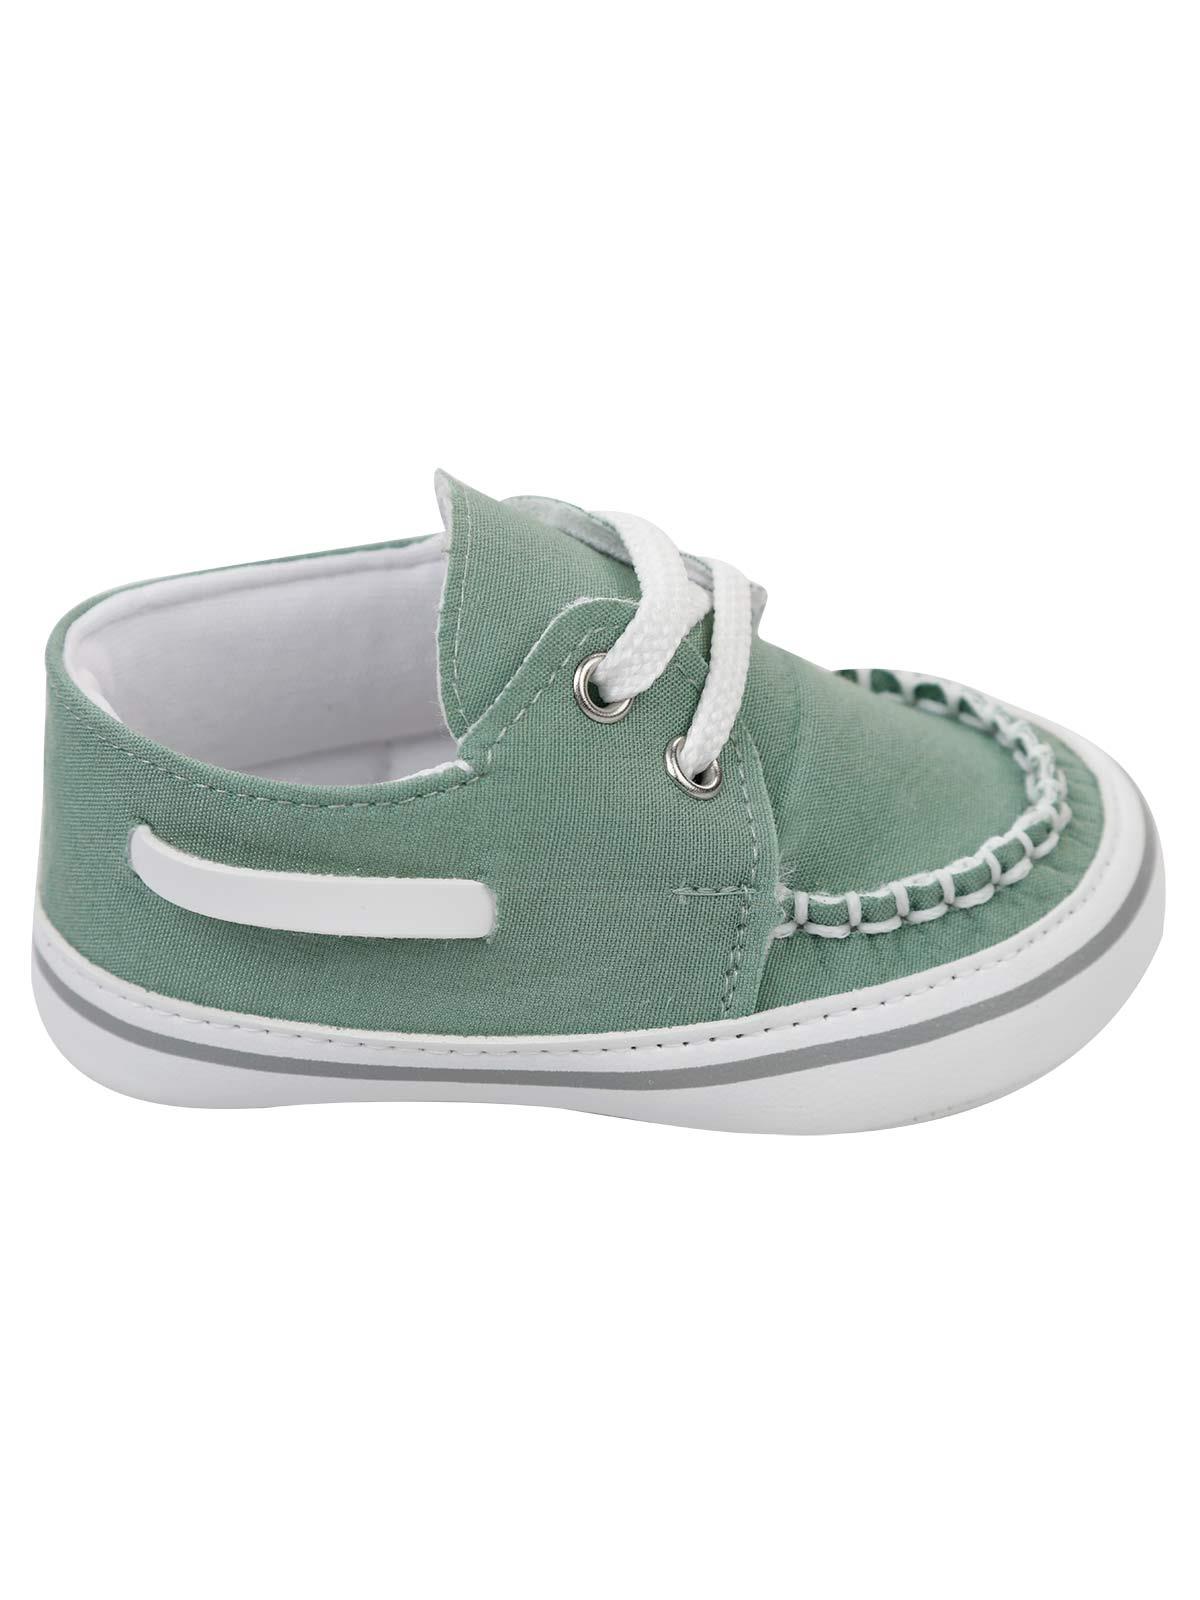 Civil Baby Erkek Bebek Patik Ayakkabı 17-19 Numara Mint Yeşili